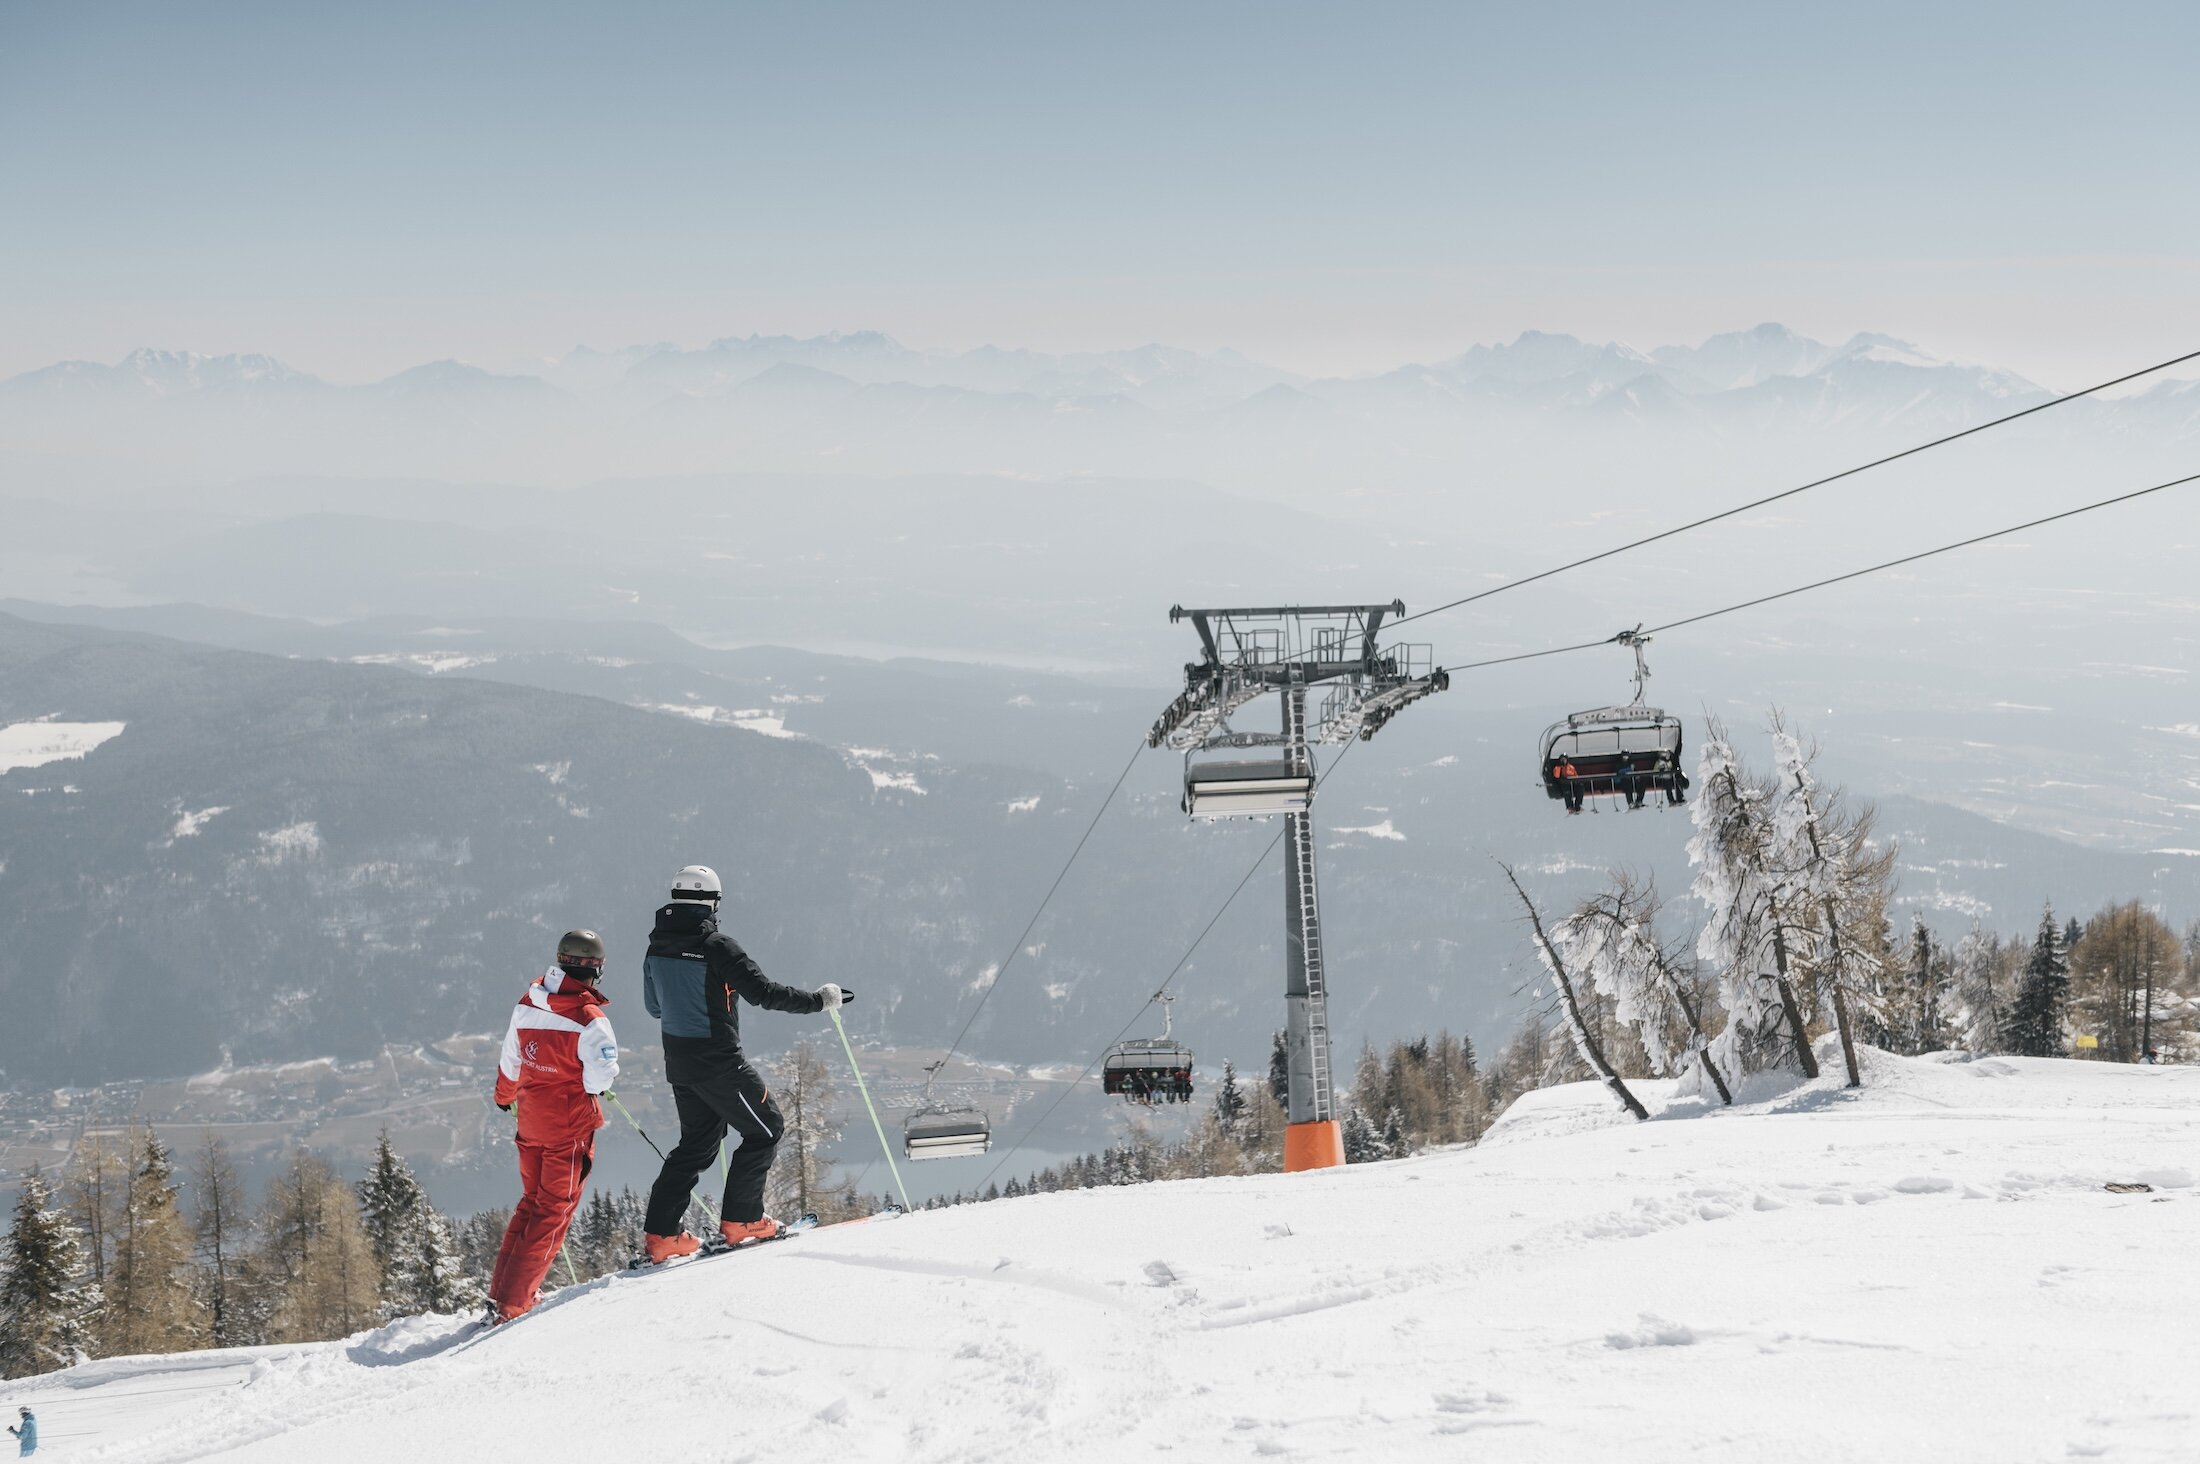 Skiing at Gerlitzen Alpe